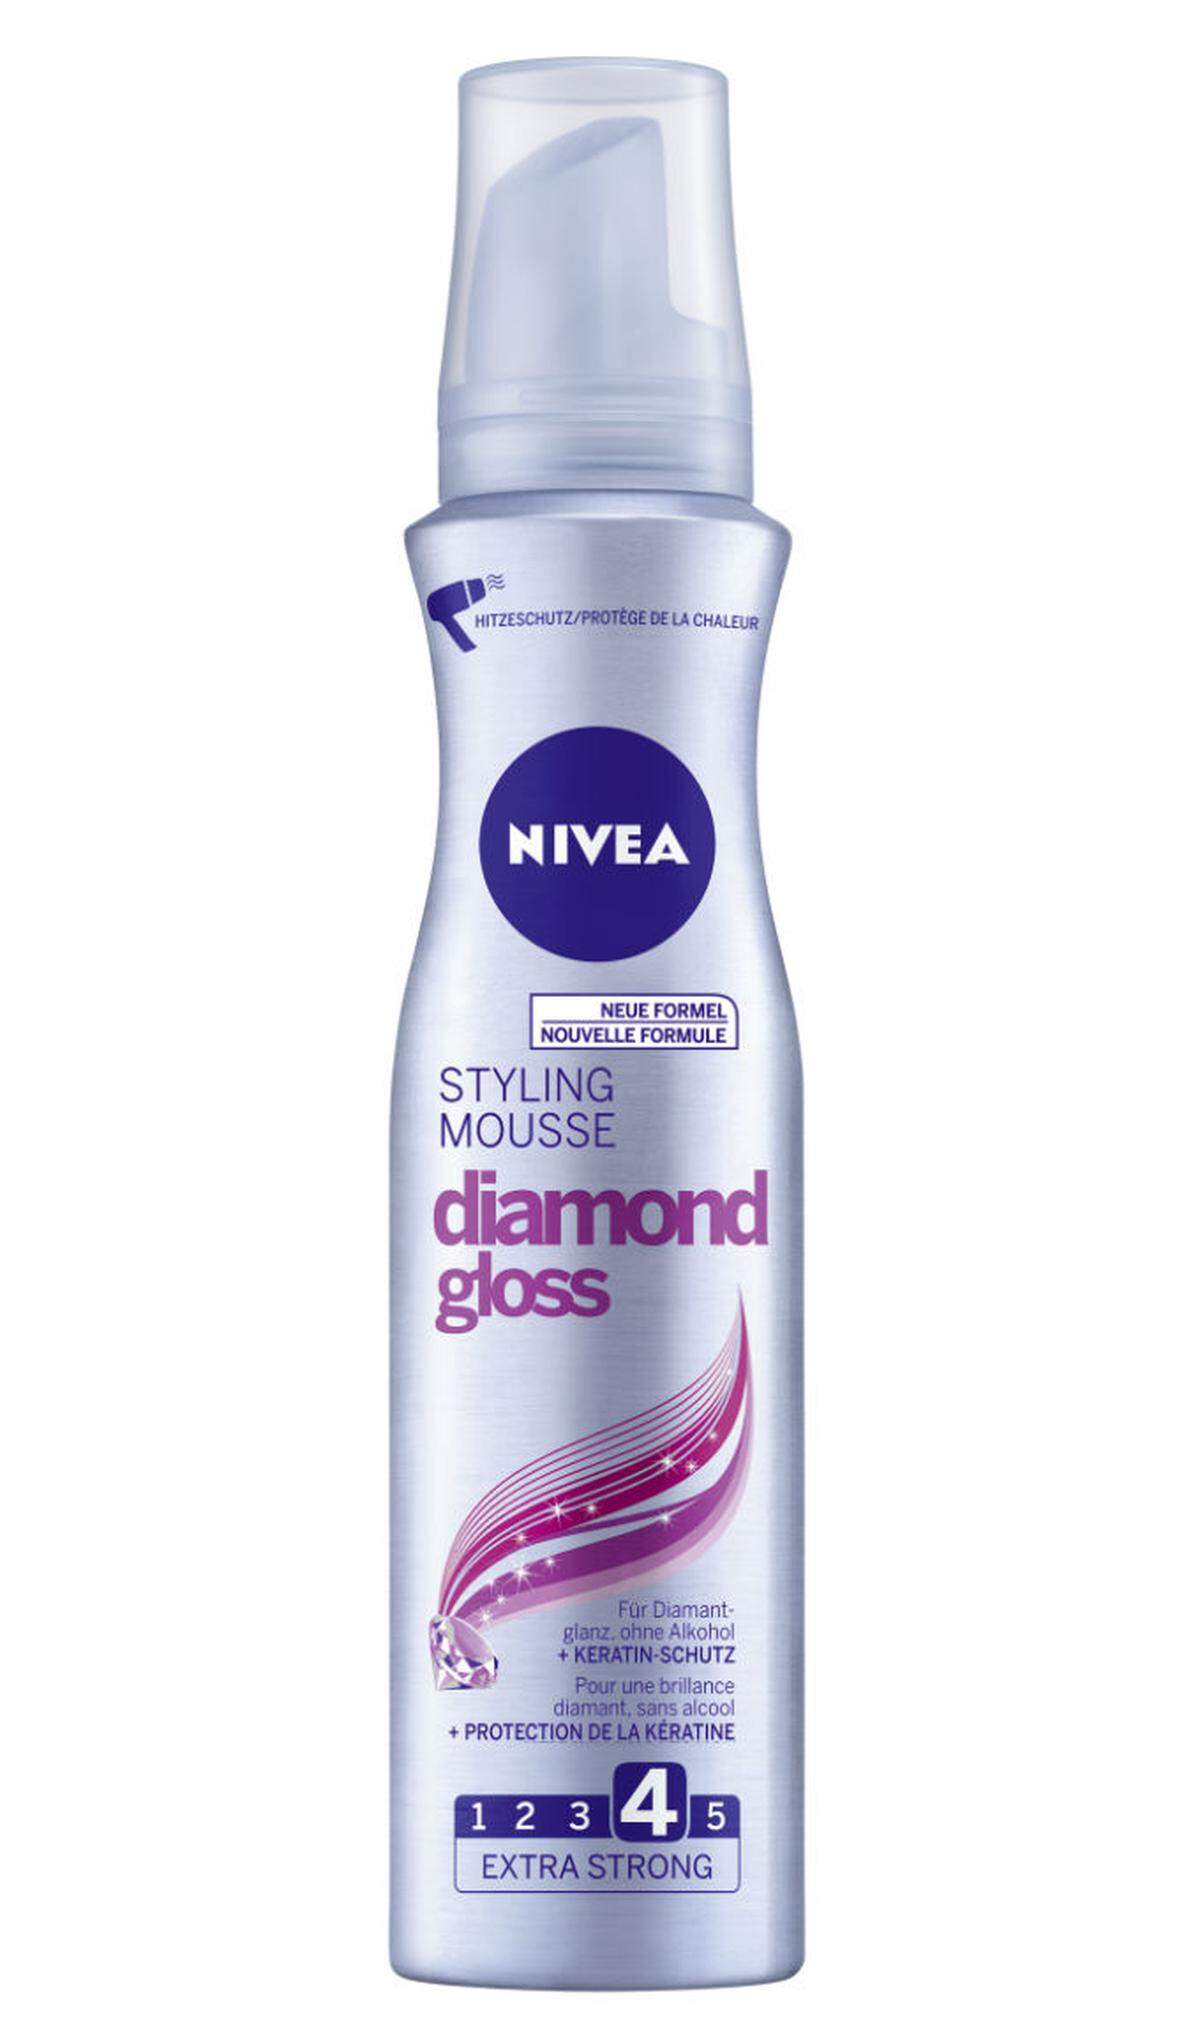 Nach dem Flechten der Zöpfe könnte das Diamond Gloss Styling Mousse von Nivea auf die restlichen Haare aufgetragen werden, um fliegende im Zaum zu halten, 4,95 Euro. 